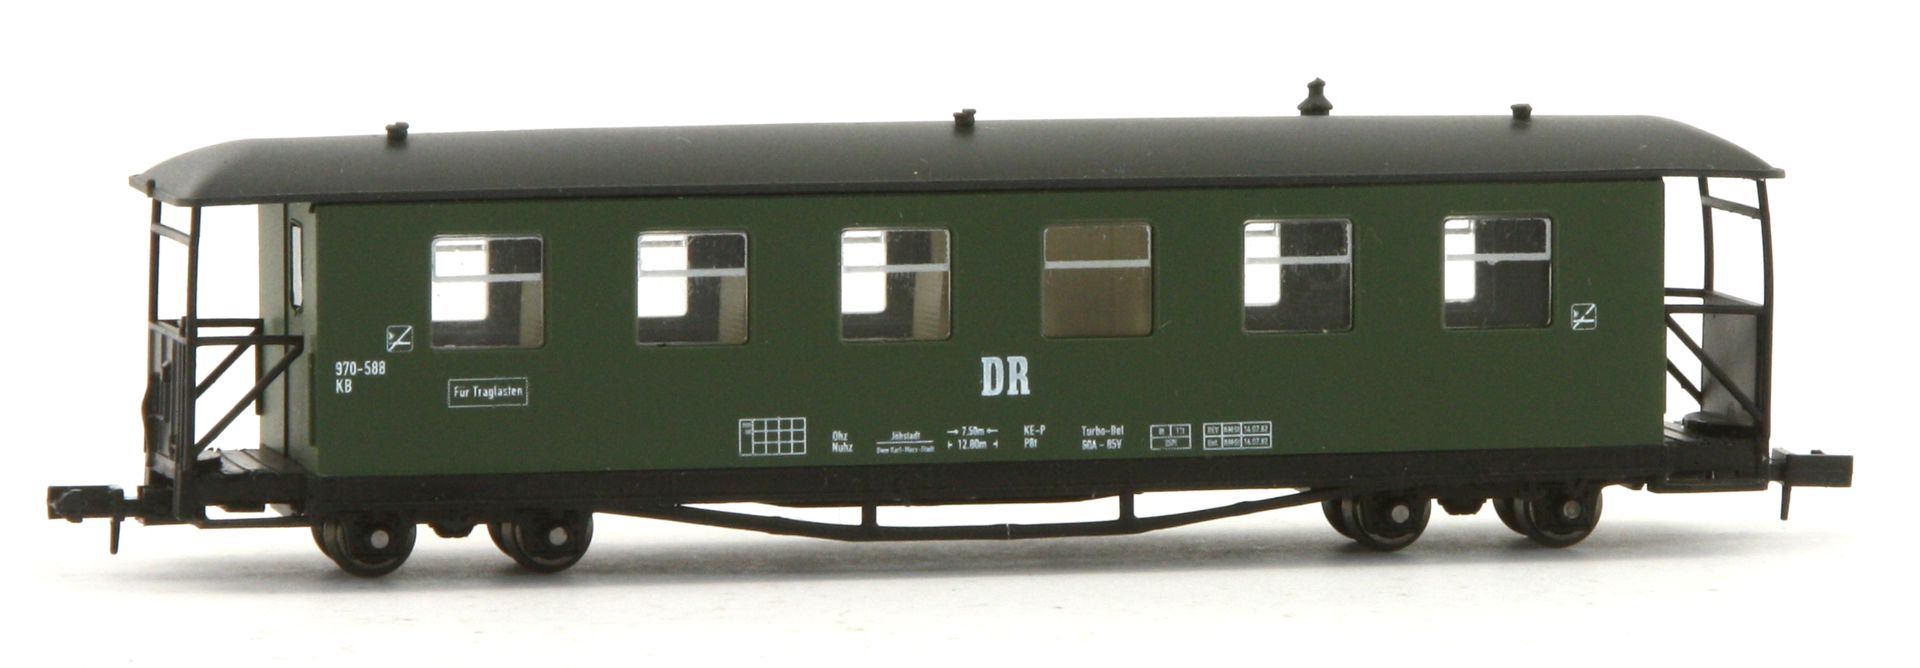 Karsei 29231 - Rekowagen, Basis Traglastenwagen, DR, Ep.III-IV, 2 .BN